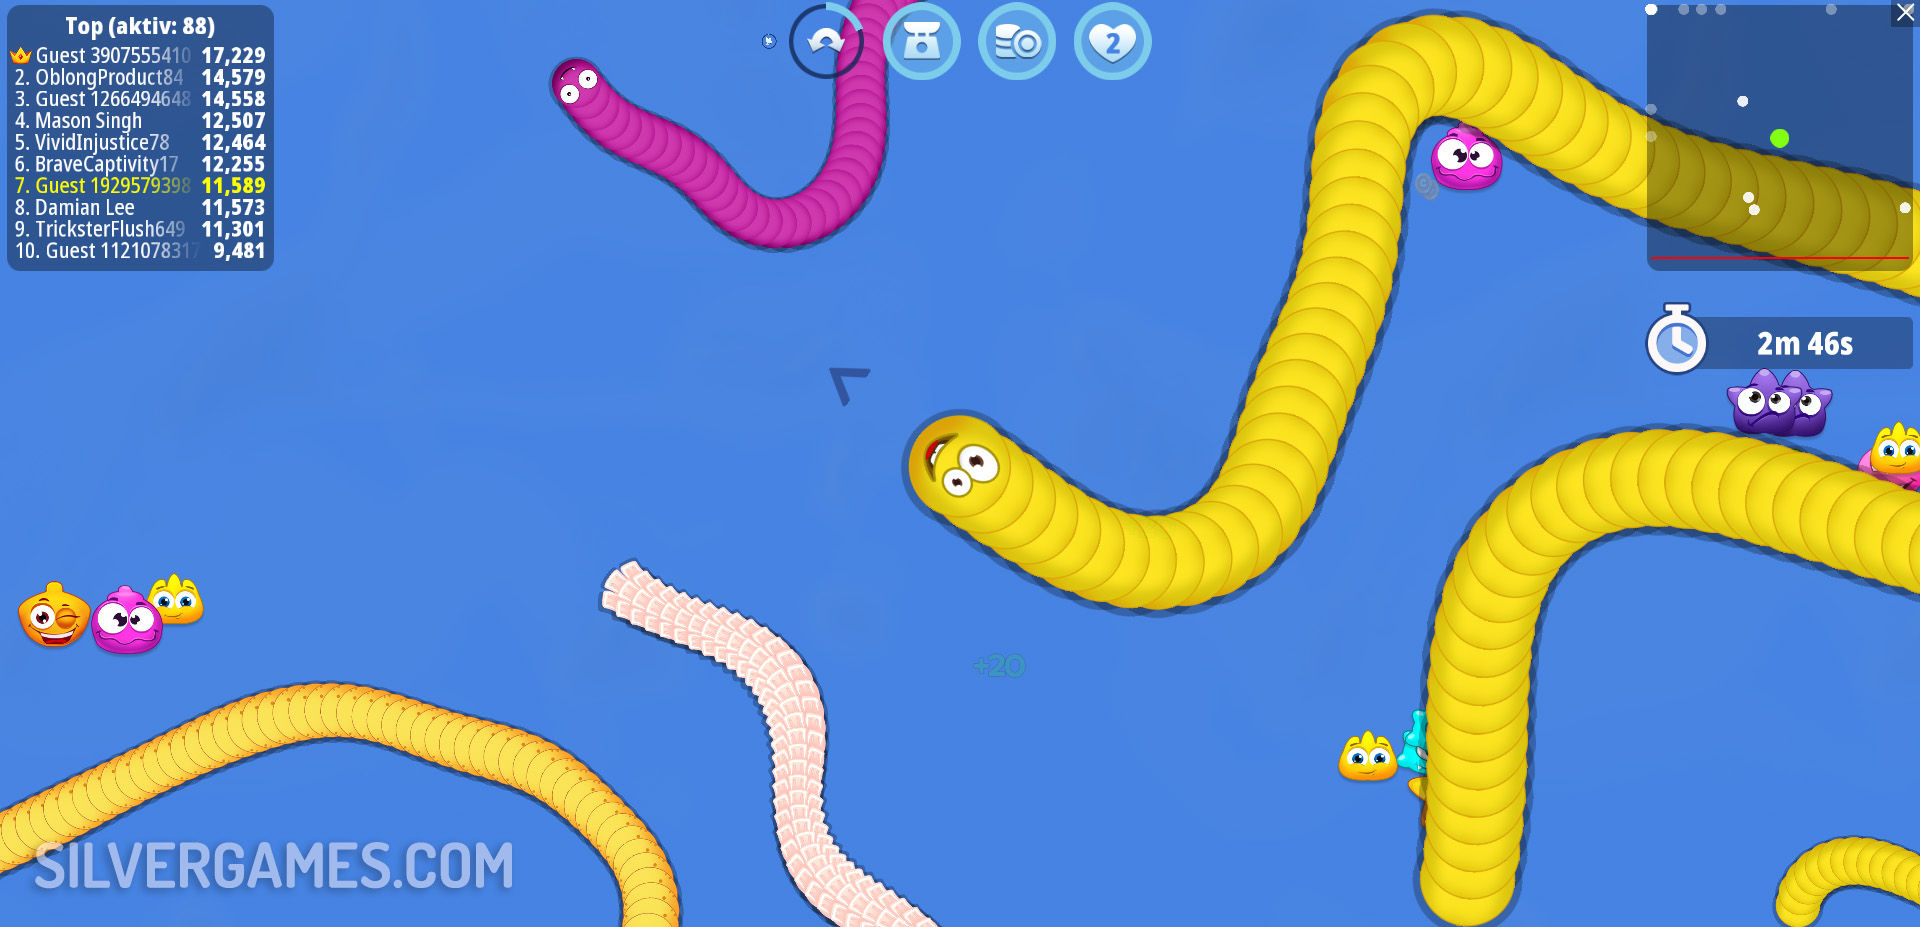 Jogue Worm Hunt - Snake Game.io Zone online de graça em